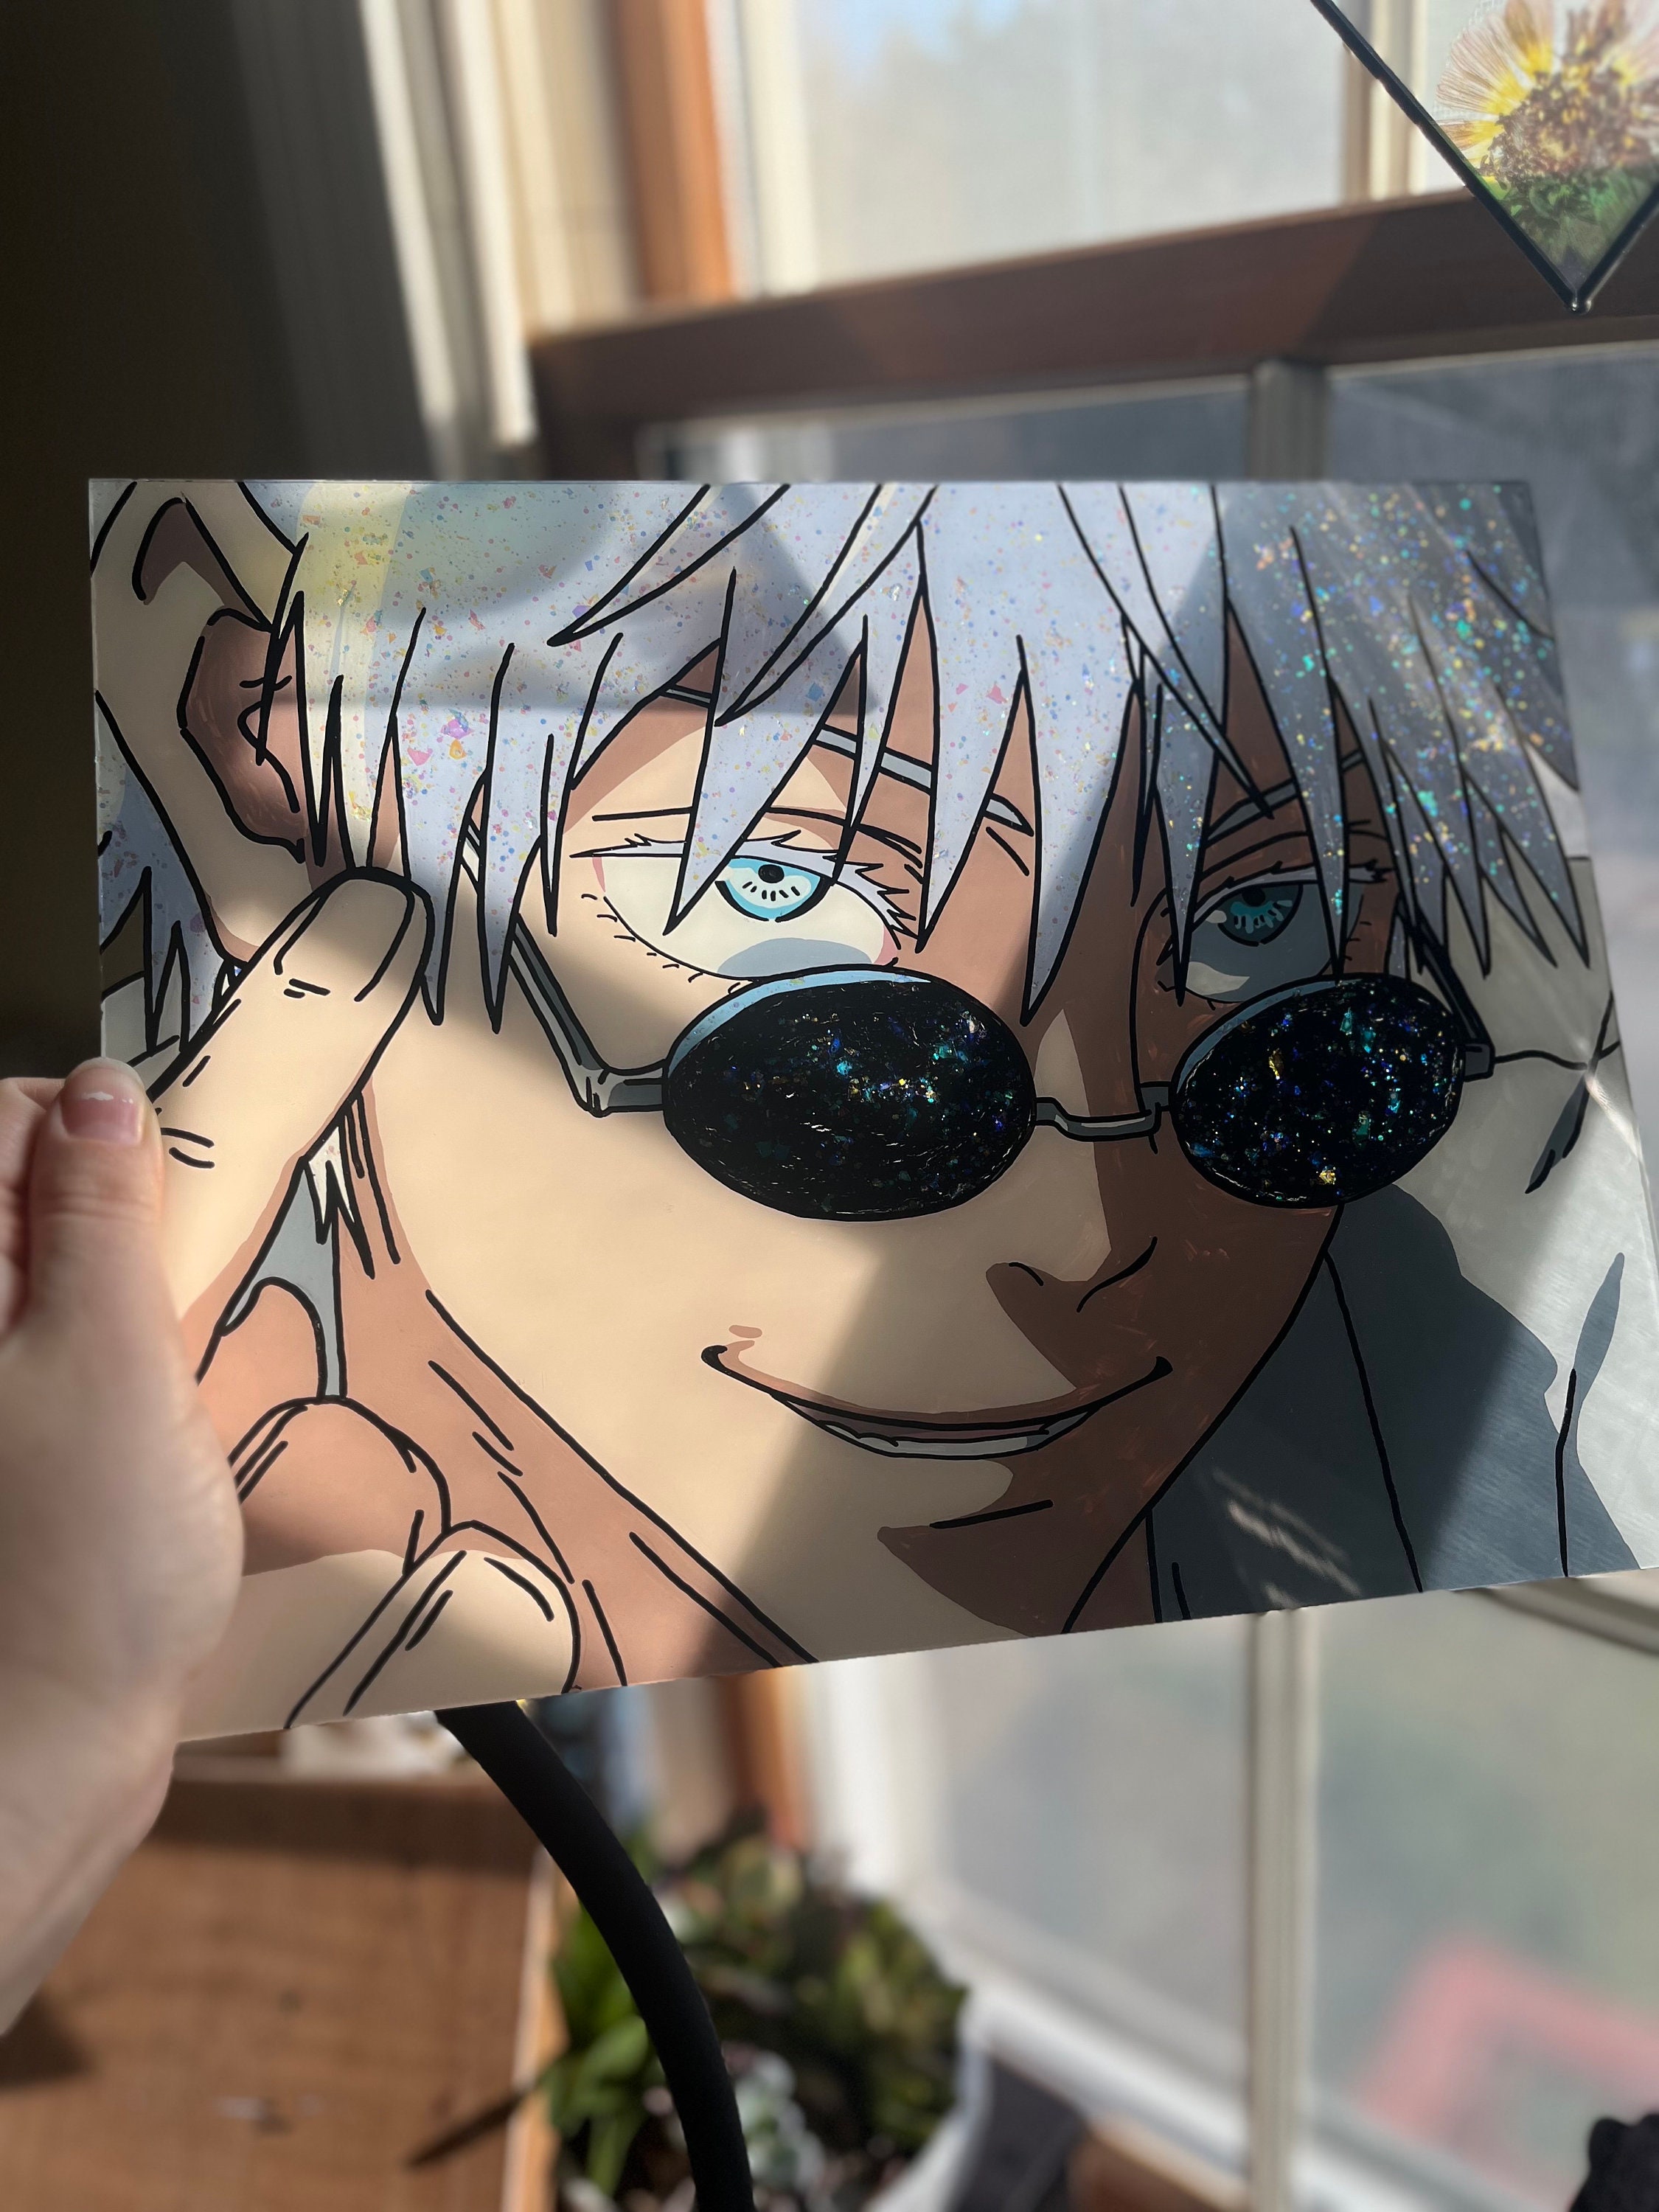 Anime Girl Wearing Glasses